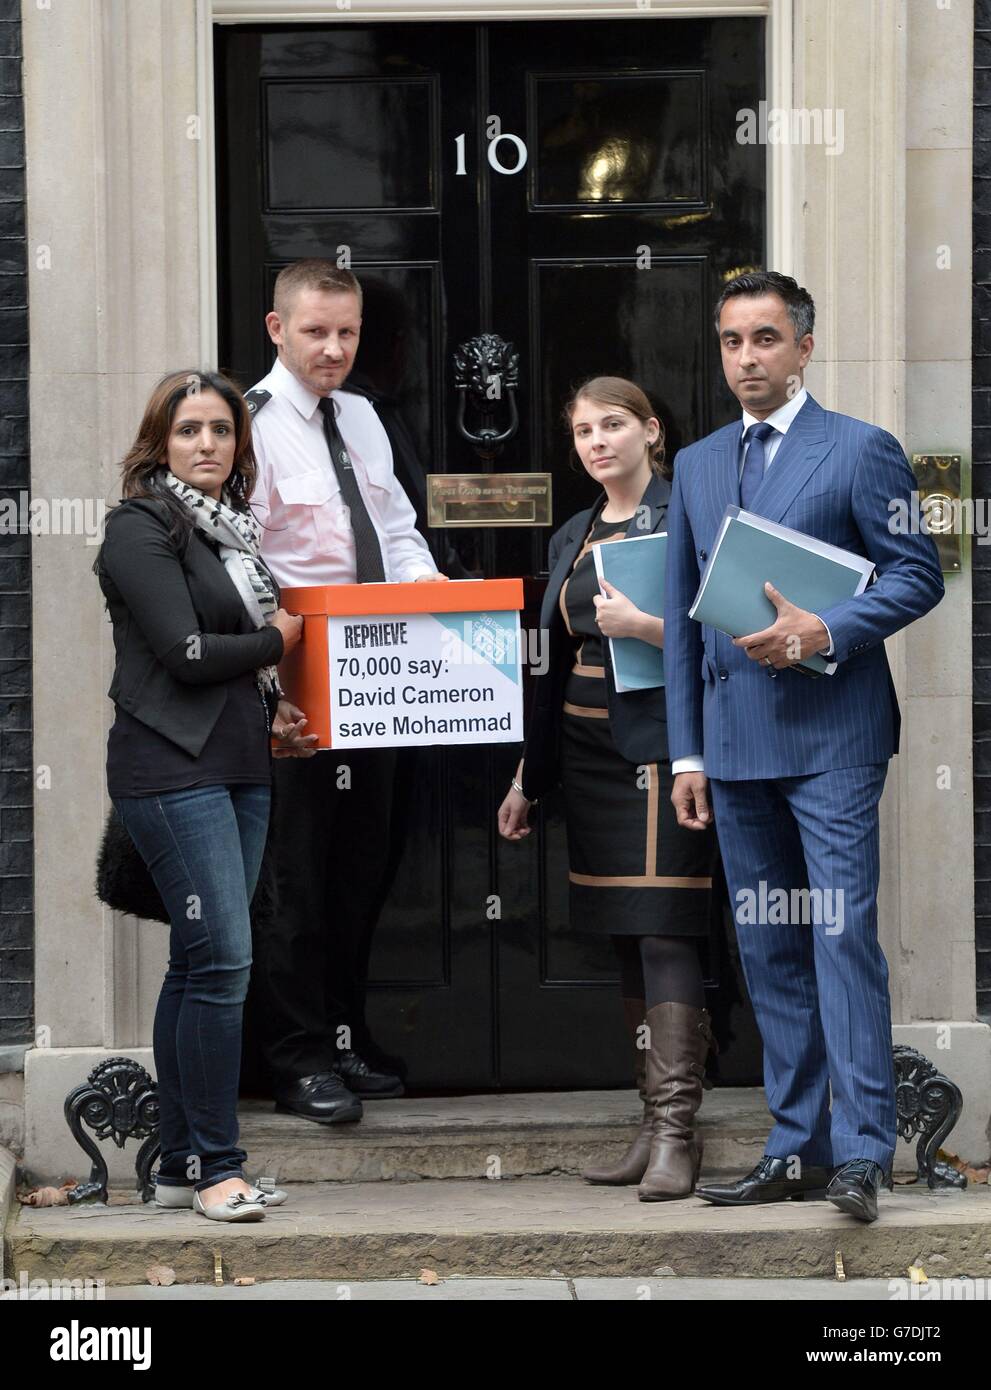 Jasmine Rana (sinistra) Aamer Anwar (destra) e Catherine Higham (seconda destra) consegnano una petizione a 10 Downing Street, Londra chiedendo al primo ministro di intervenire nel caso di blasfemia di Mohammad Asghar. Foto Stock